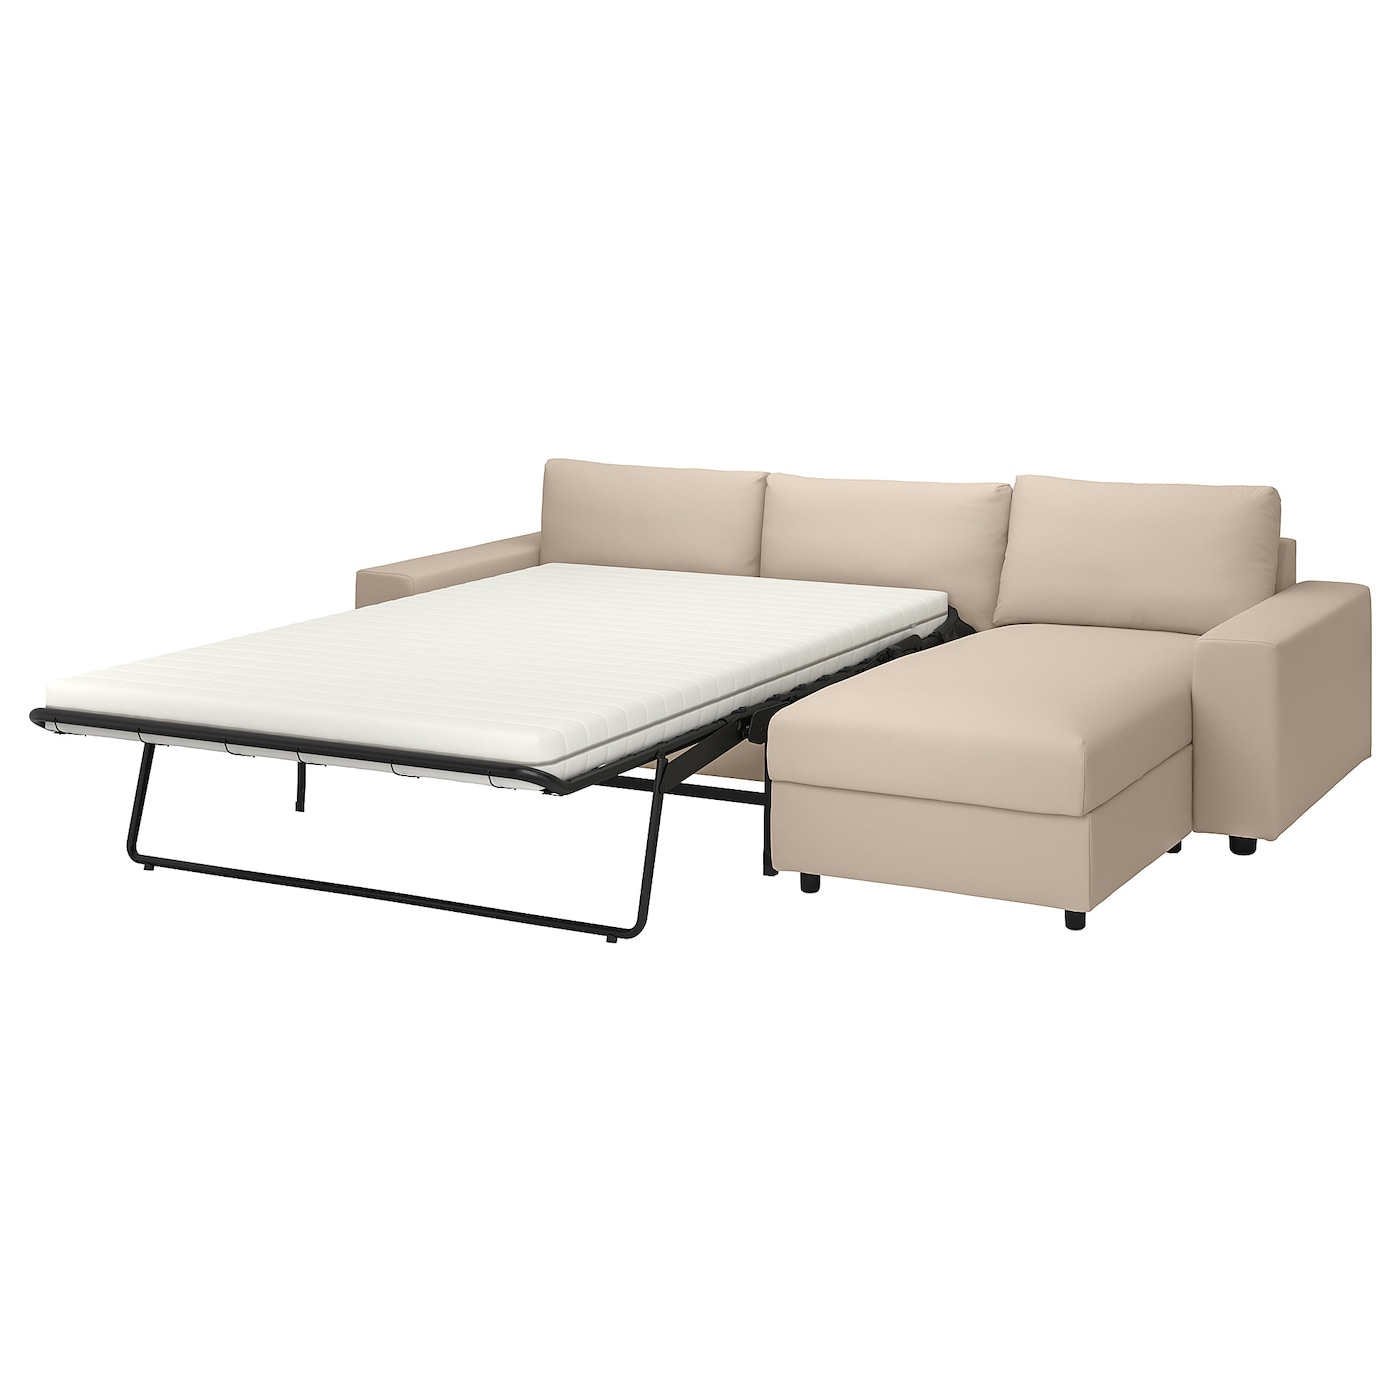 ВИМЛЕ 3-местный диван-кровать + диван, с широкими подлокотниками/Халларп бежевый VIMLE IKEA диван прямой смарт mille 09 3 х местный с подлокотниками еврокнижка а2491530061